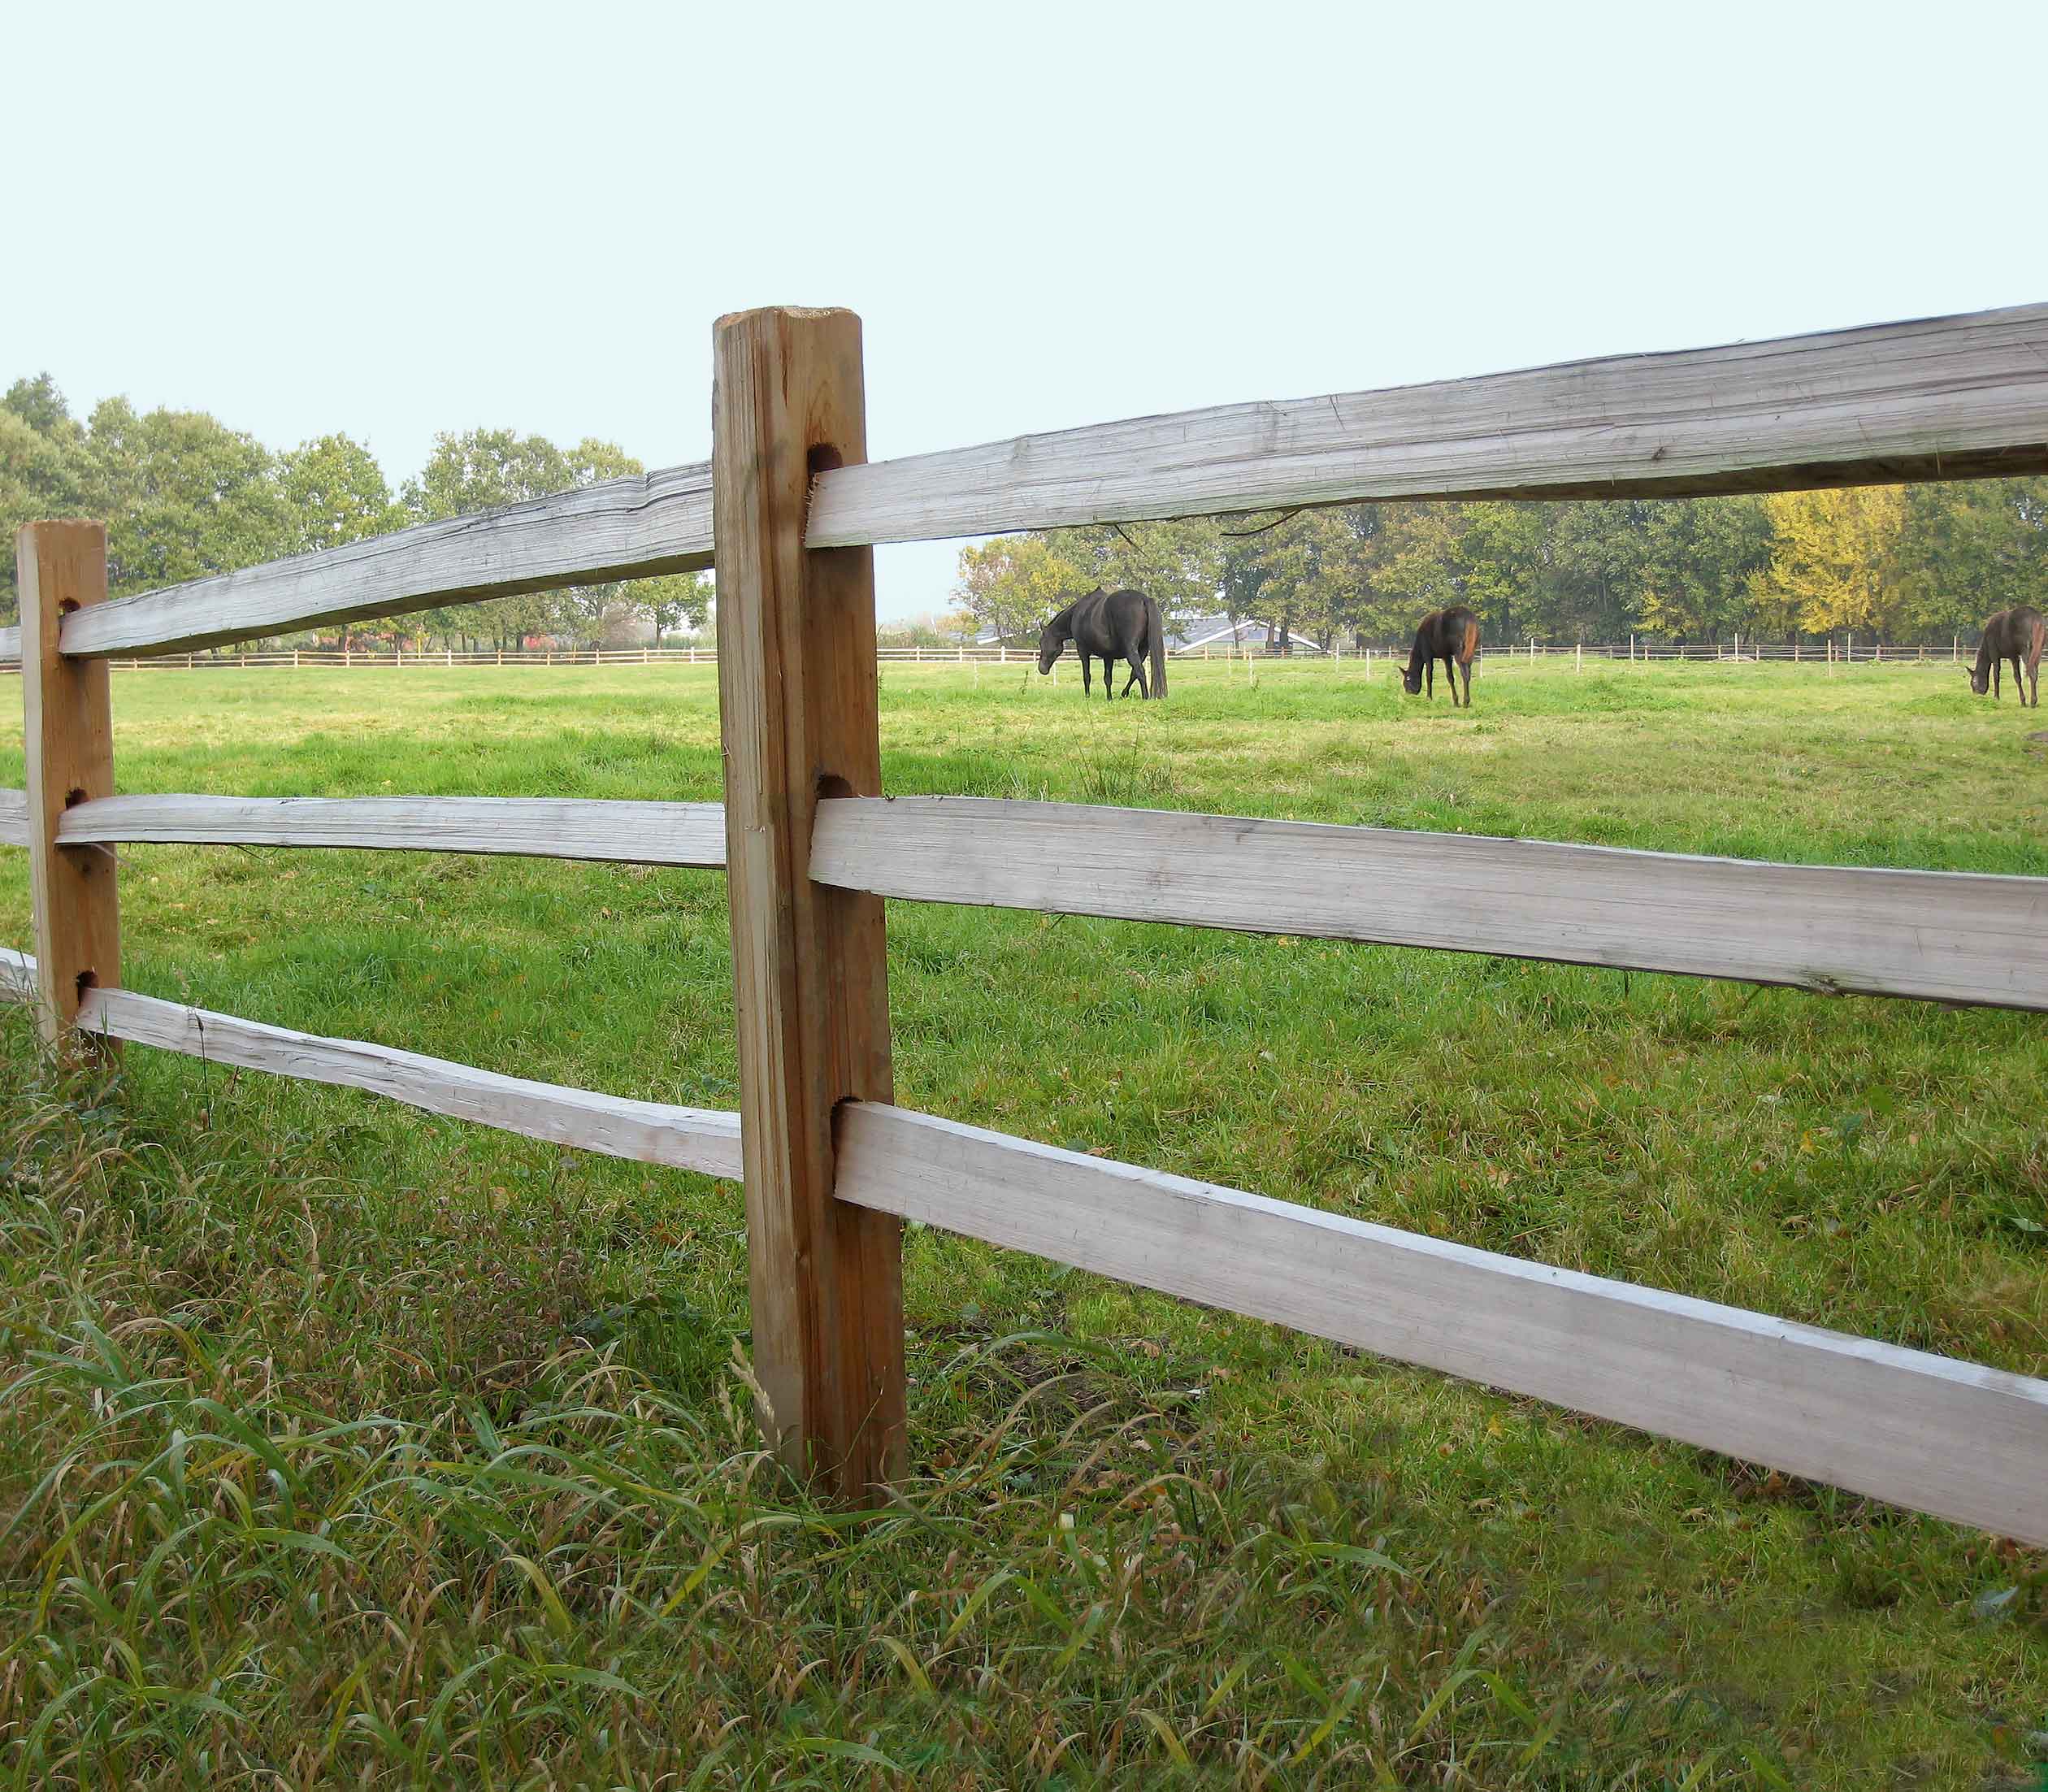 Tussen de latten van een rustiek paardenhek grazen drie paarden in een paddock.